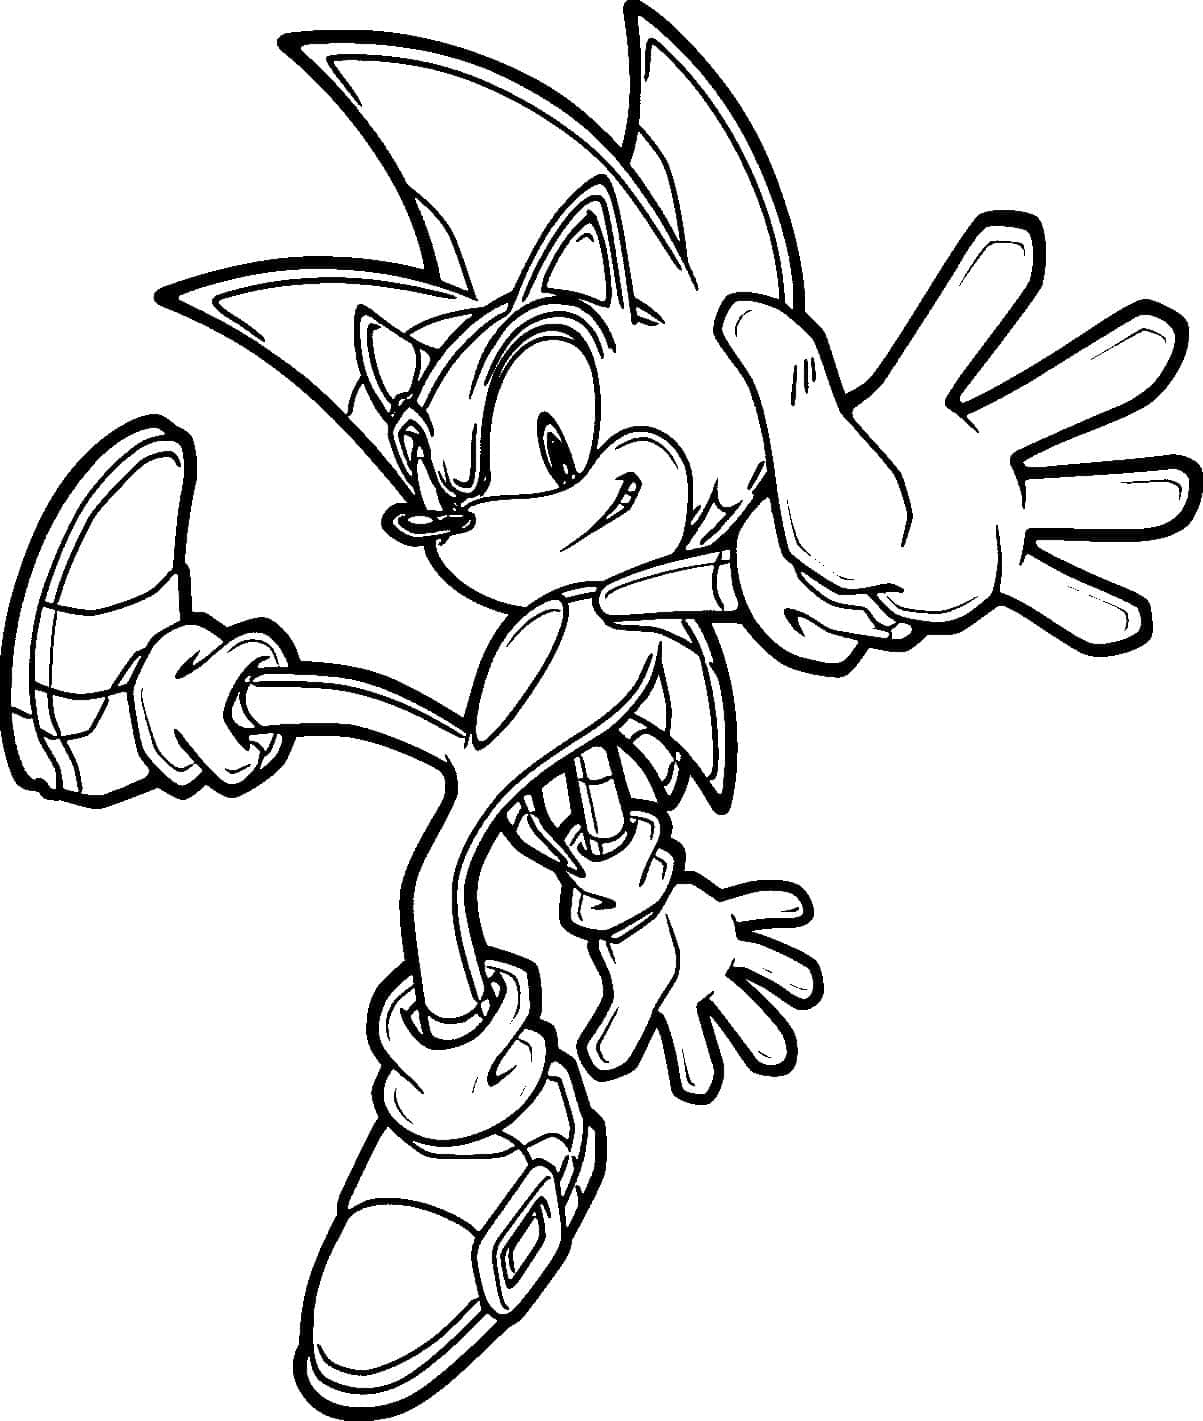 Soniccoloring Kickando L'immagine Di Sonic The Hedgehog